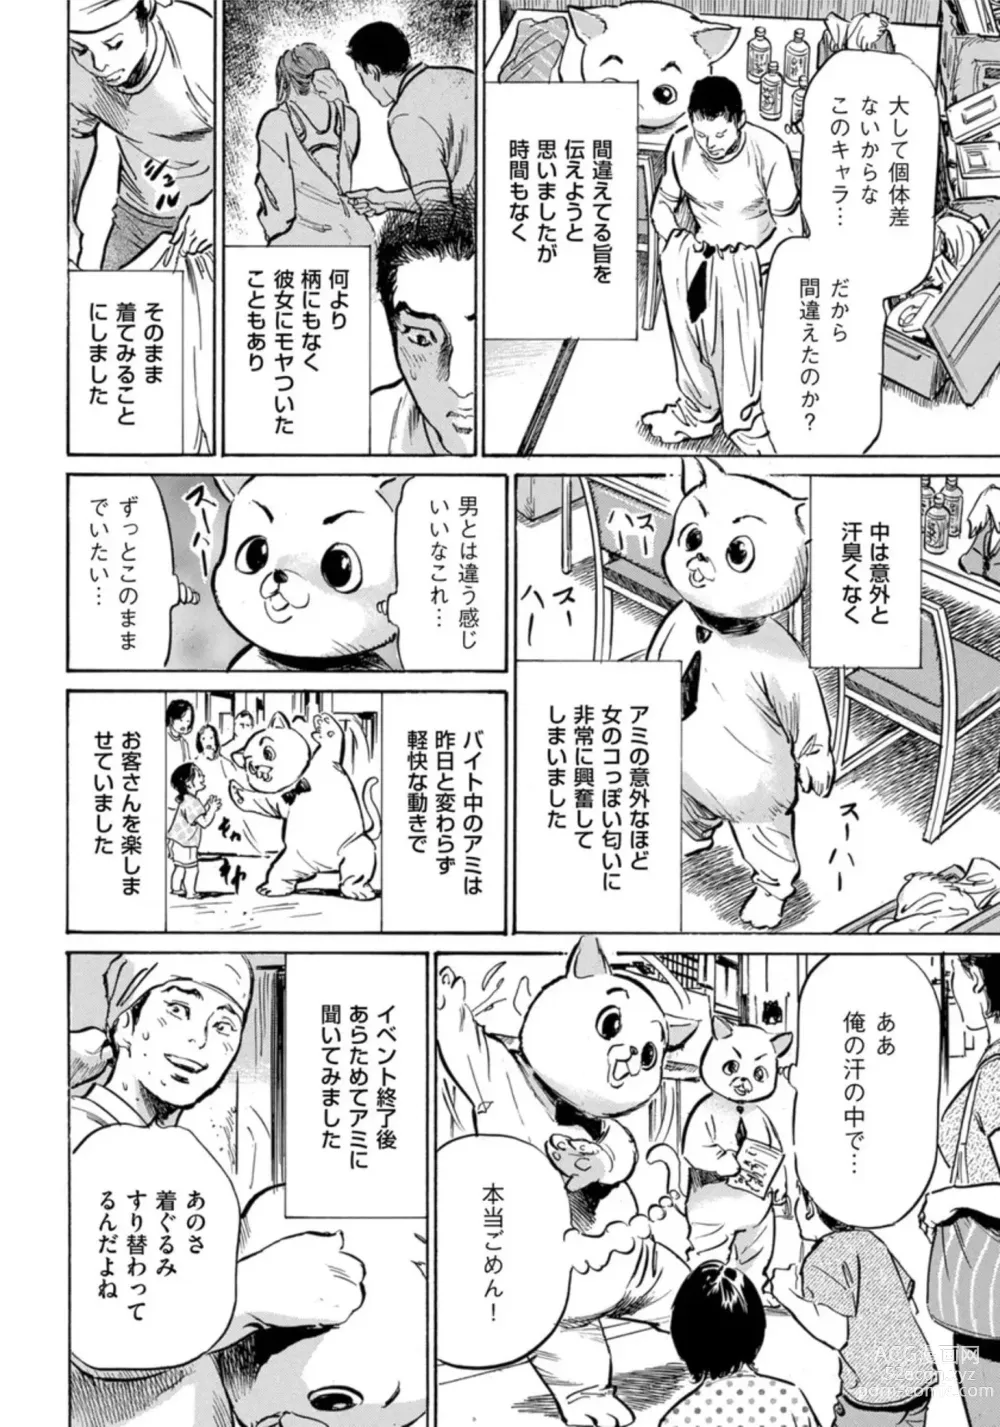 Page 9 of manga Zutto Himitsu ni Shiteita Ano Koto Zenbu Oshiemasu 14 episodes